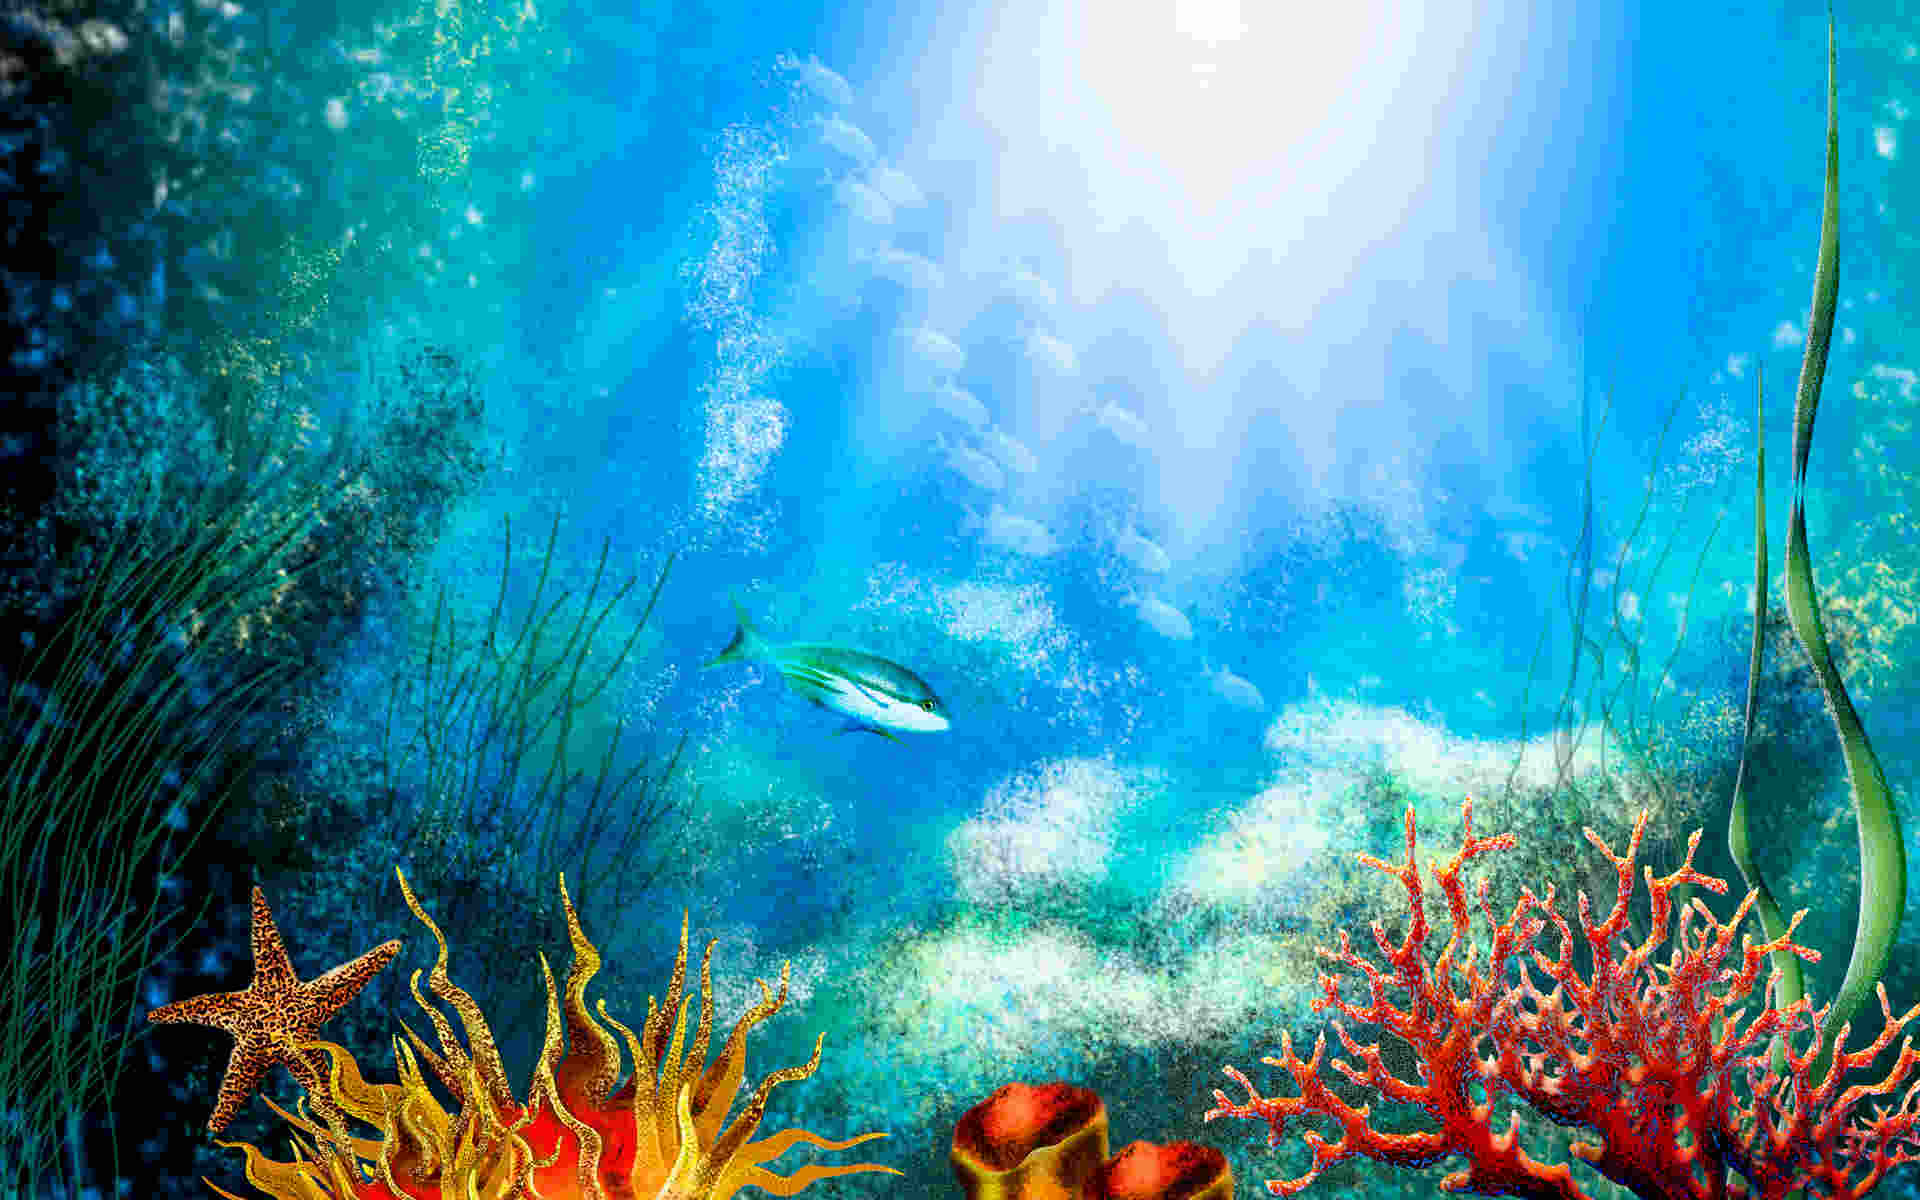 Aquarium Wallpaper, Fish Background, Image, Picture